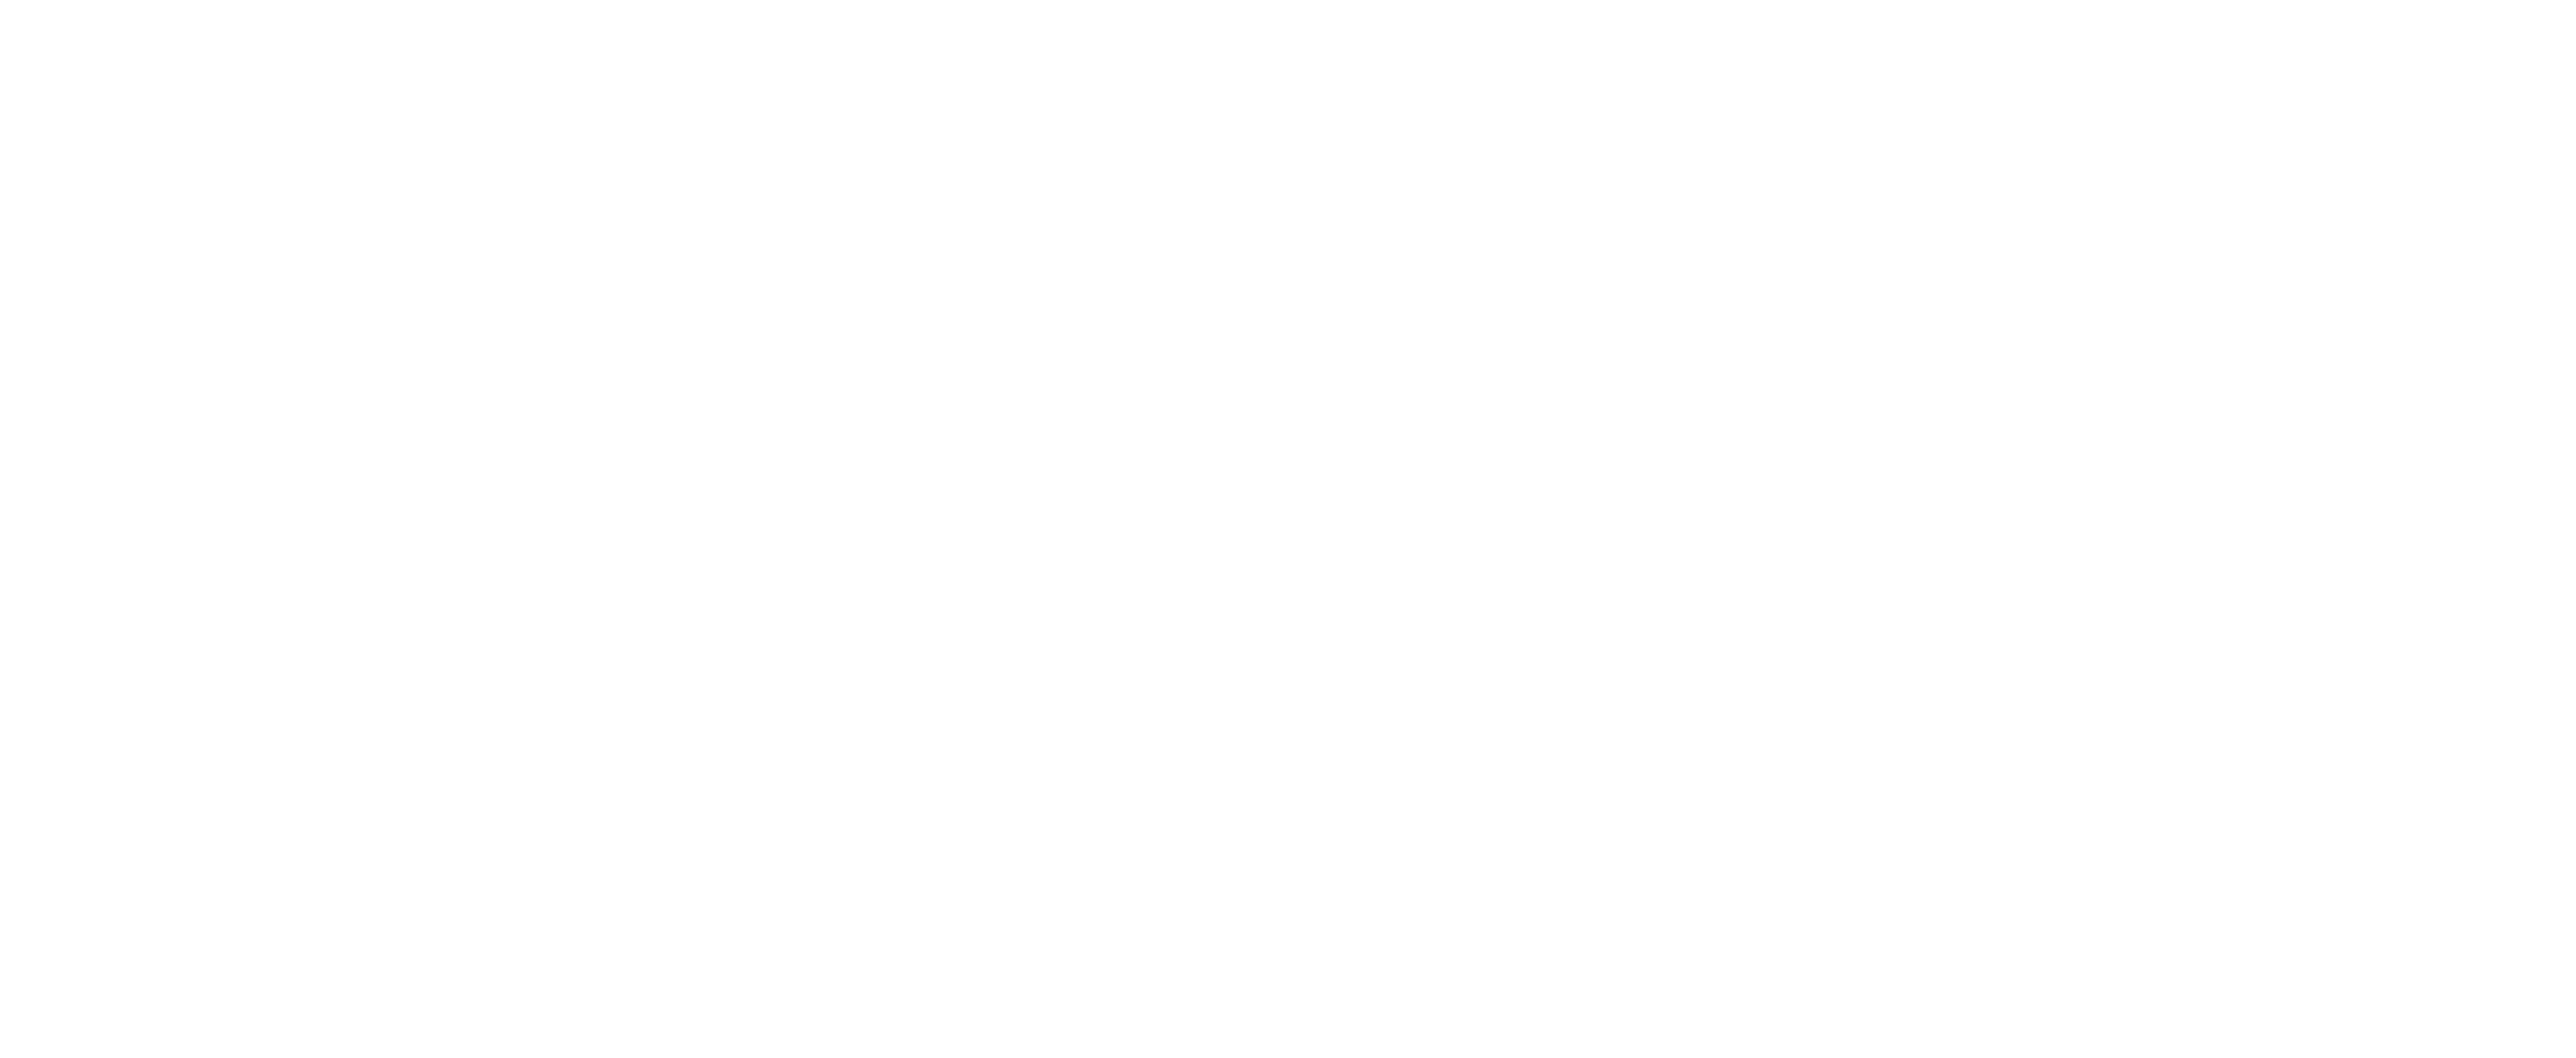 Futr Hub CKAN Portal